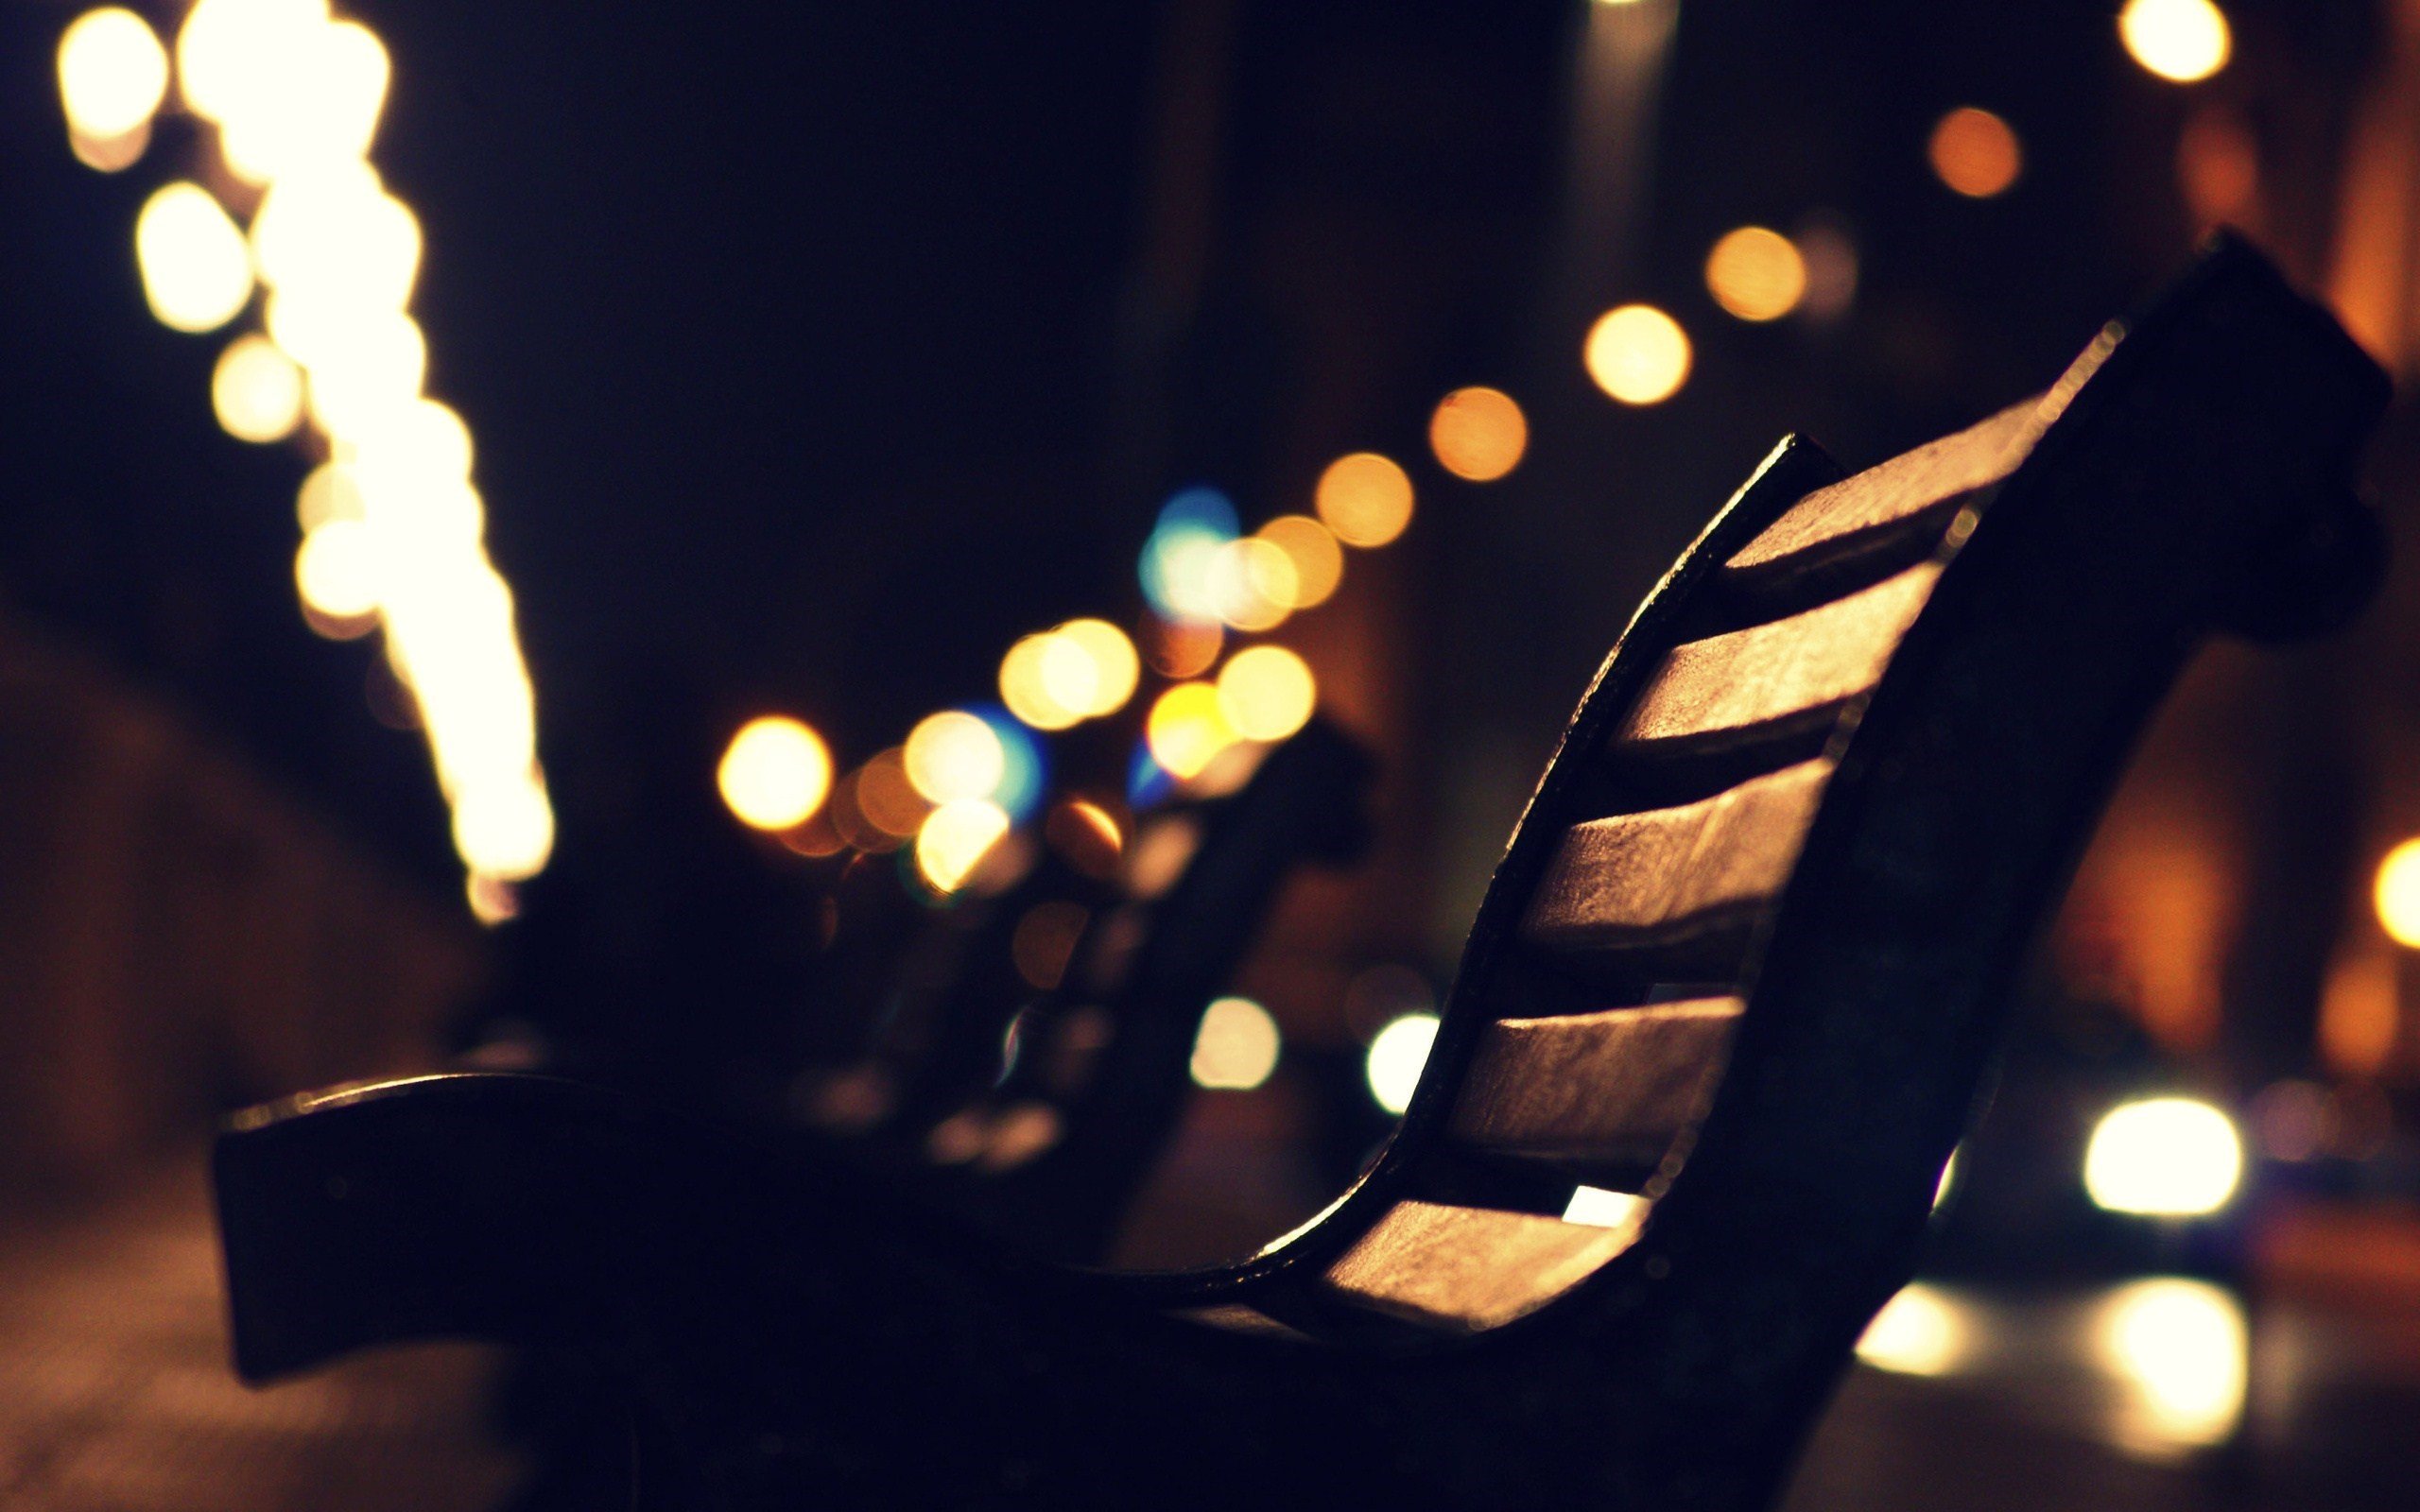 bench, City at night, Lights, Street light Wallpaper